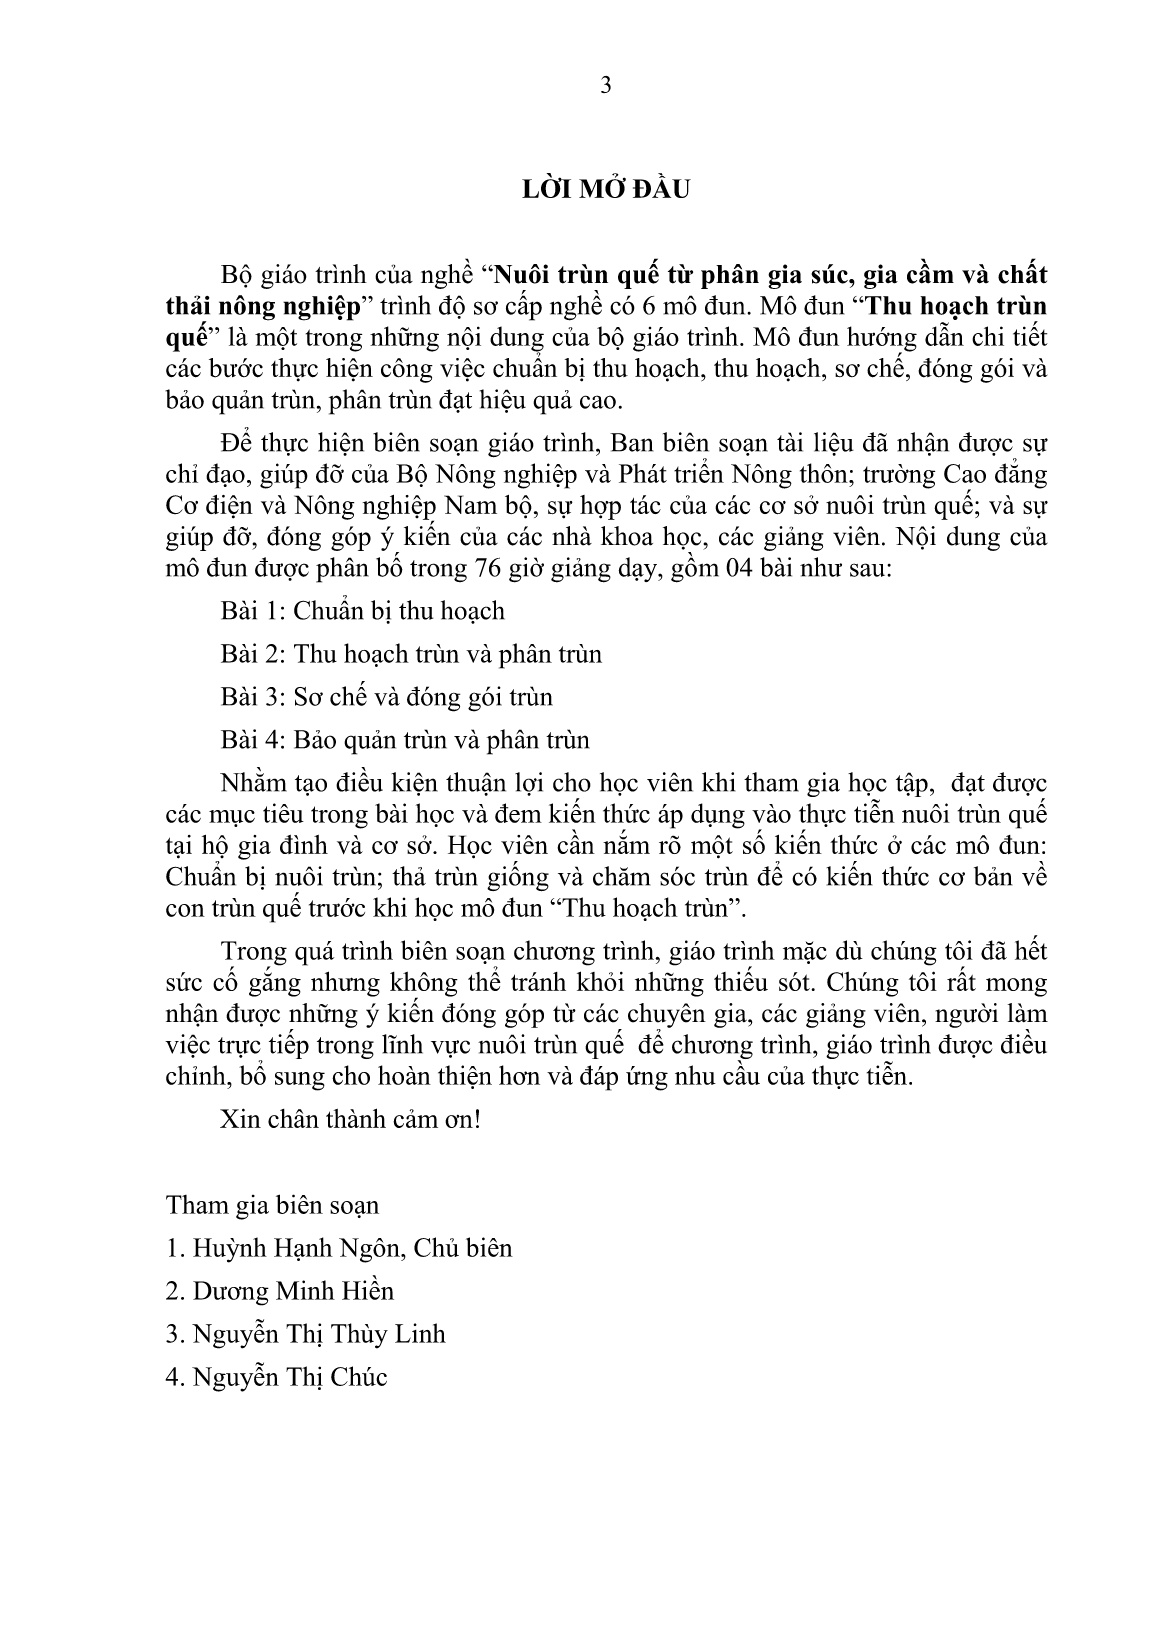 Giáo trình mô đun Thu hoạch trùn quế (Trình độ: Sơ cấp nghề) trang 4